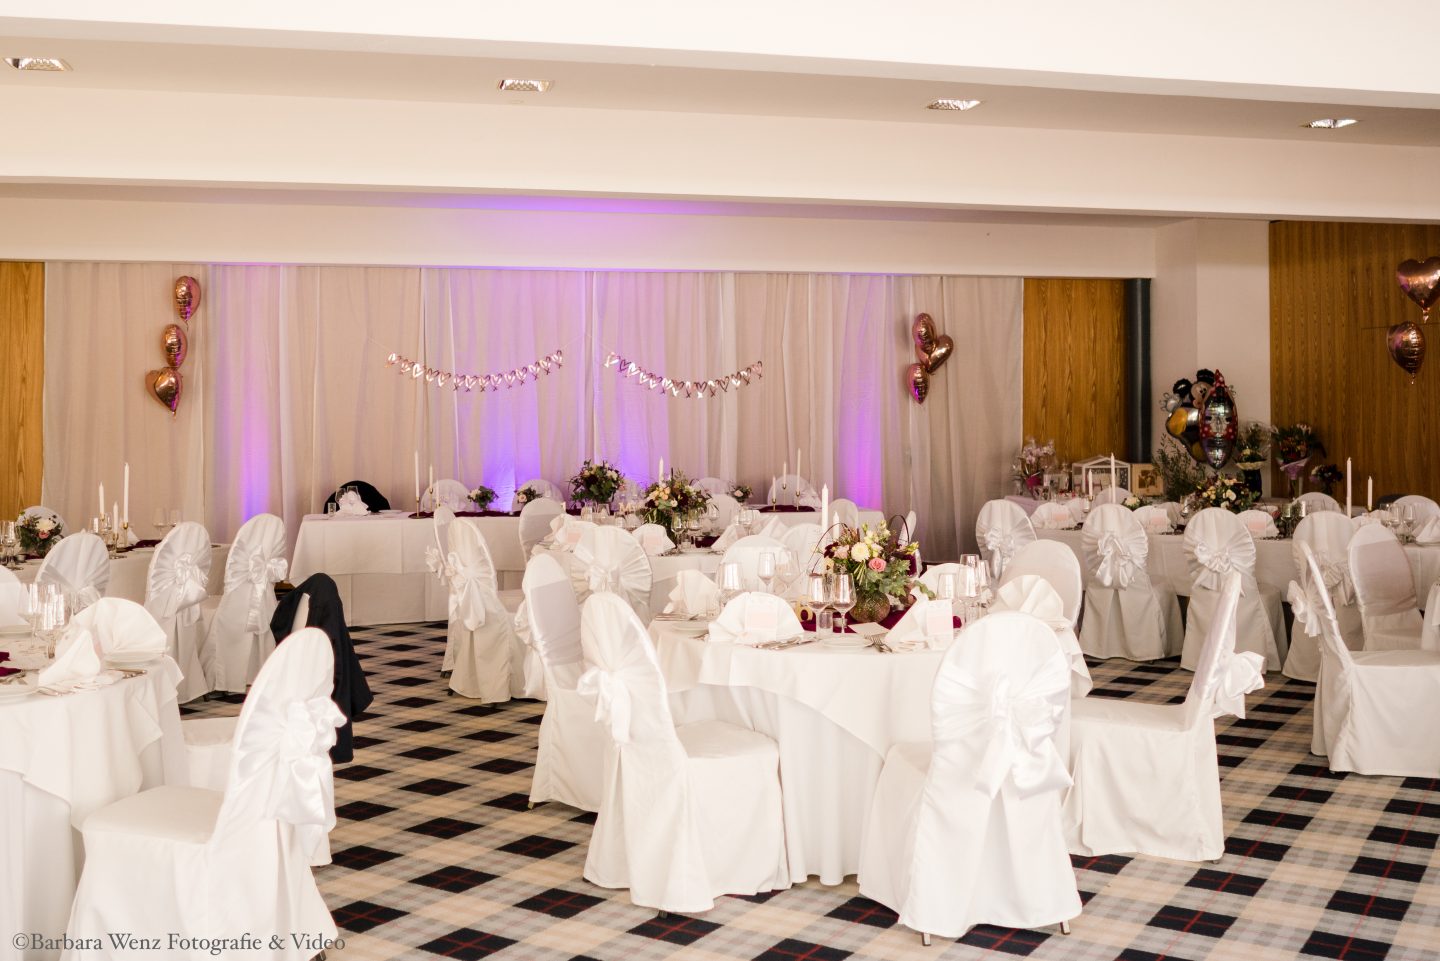 Der Festsaal des Berghotels Tulbinger Kogel. Festlich dekoriert für eine Hochzeit. Tische weiß gedeckt, Stühle mit weißen Stuhlhussen mit Satinmaschen an der Lehne. Der Teppichboden ist weiß-grau-schwarz kariert. Im Hintergrund rosa Luftballons.